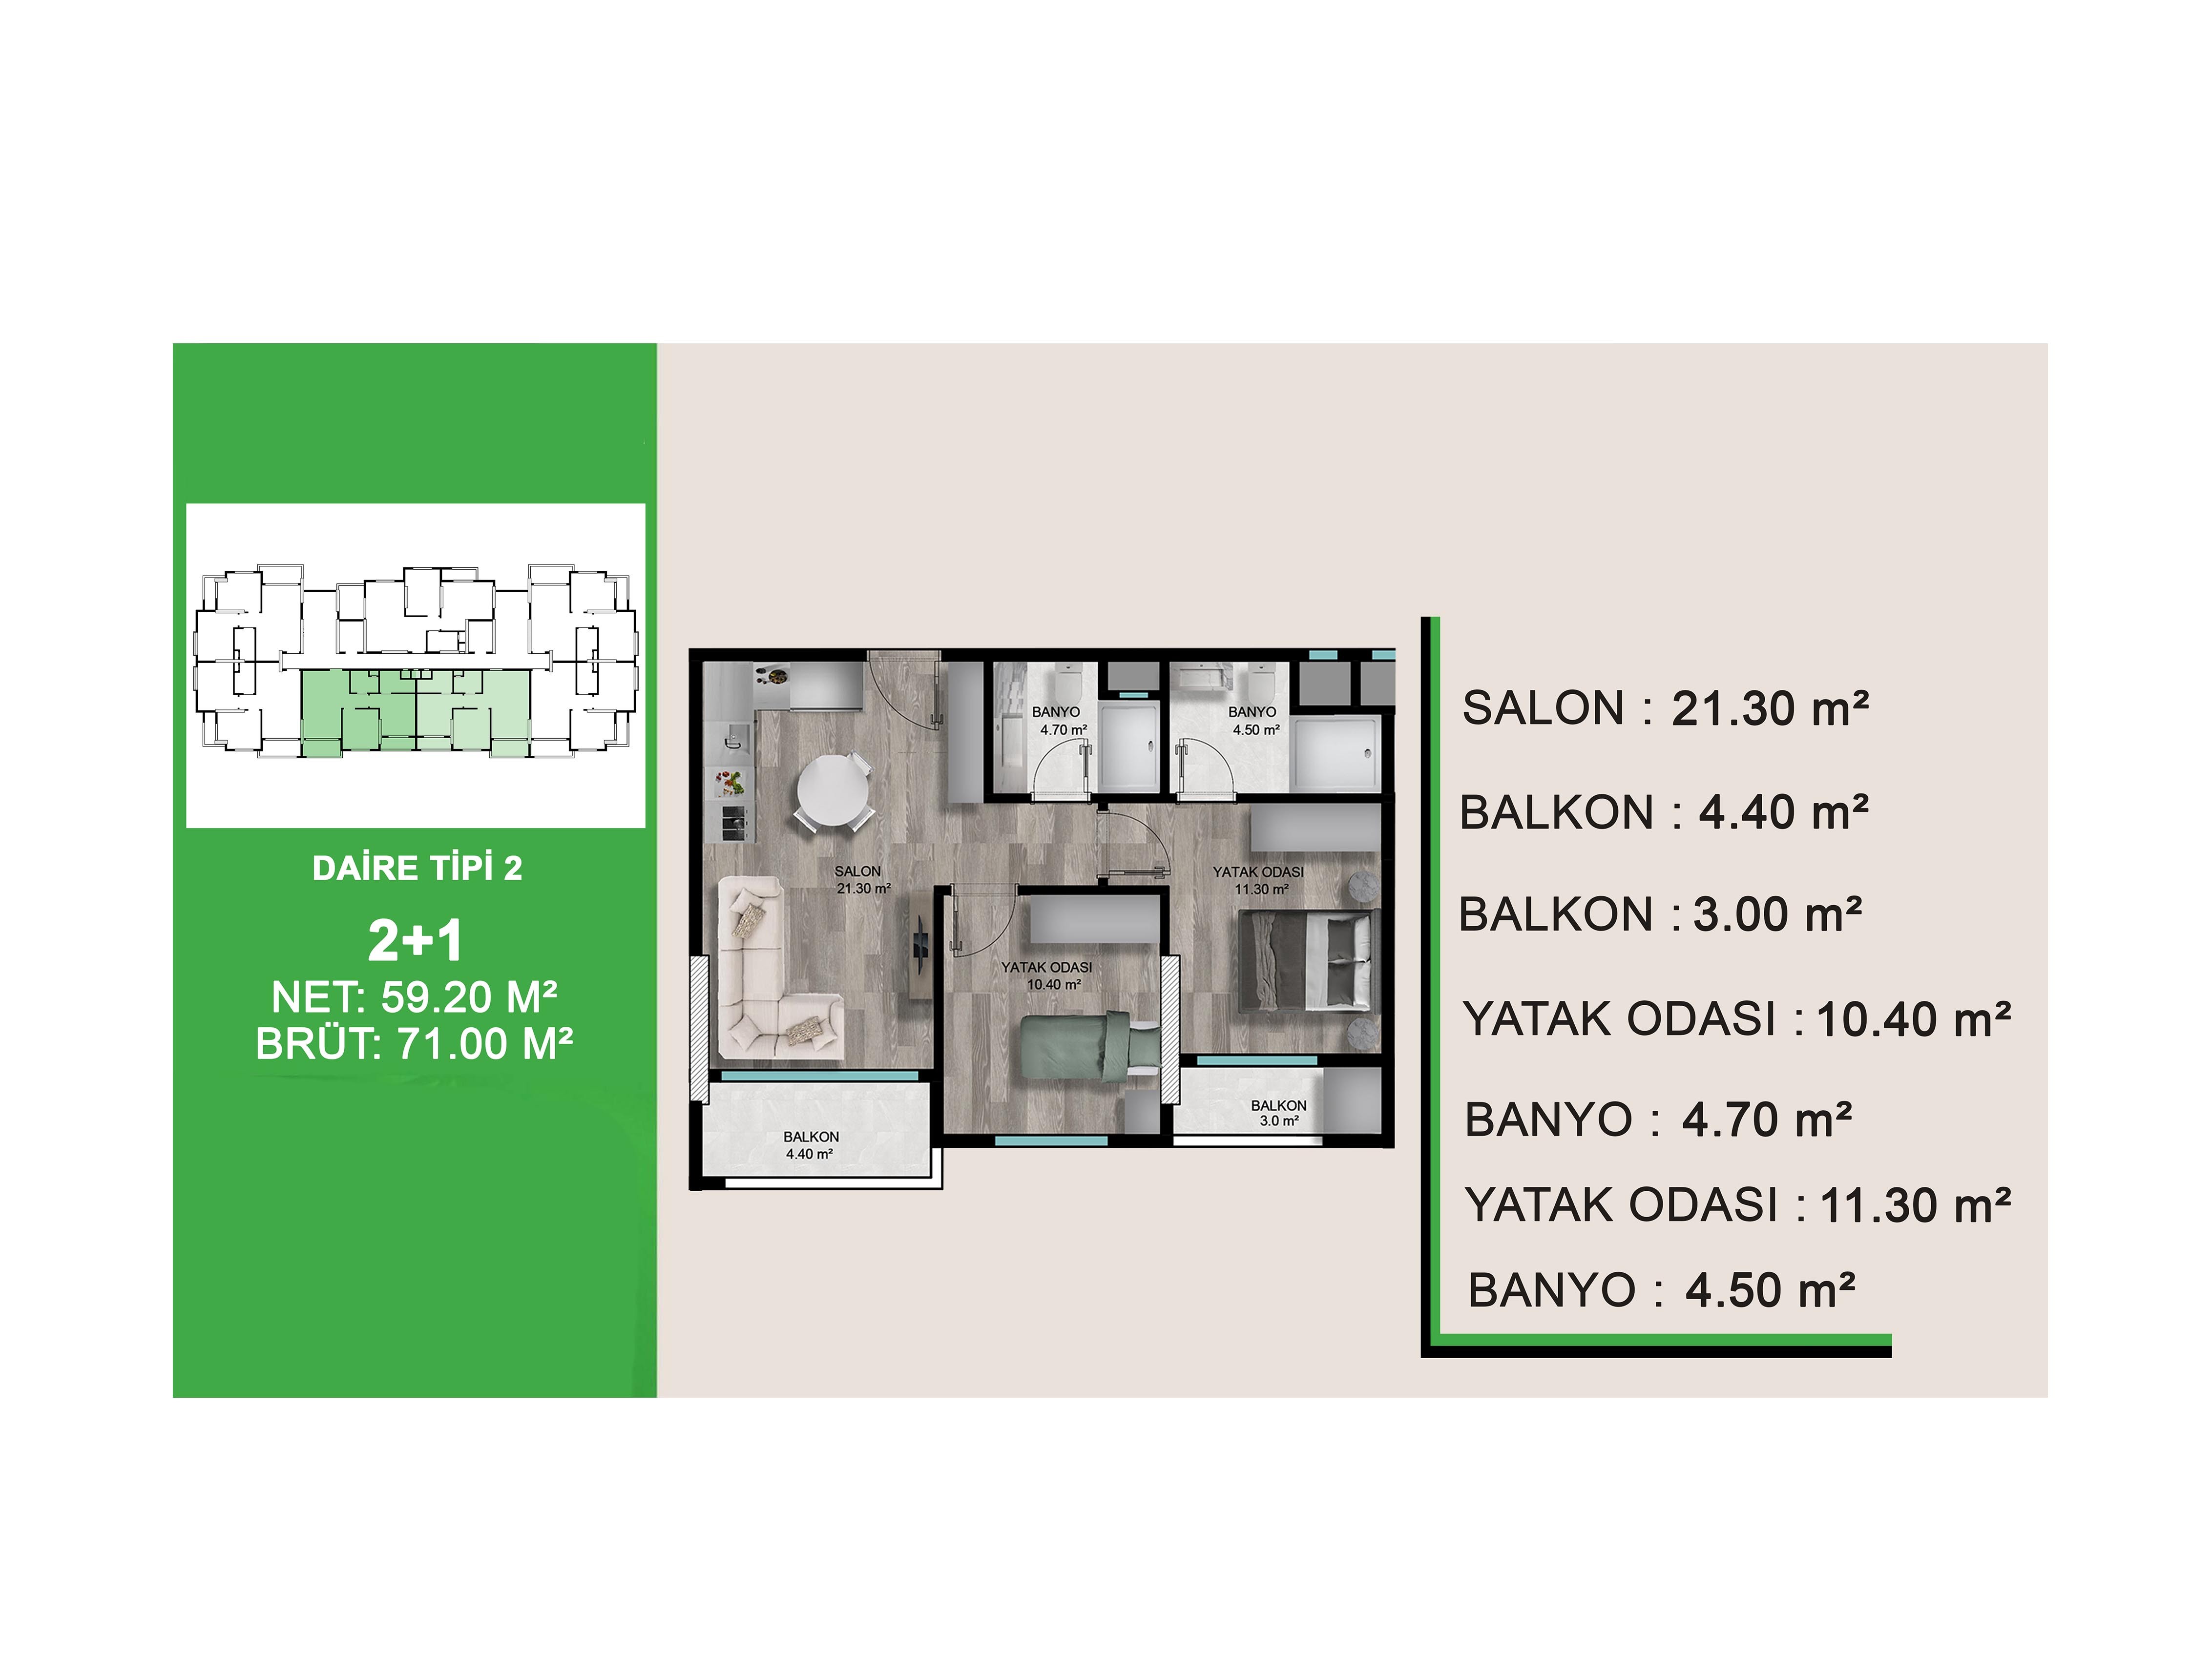 Новый жилой комплекс с апартаментами планировкой 1+1 и 2+1 в районе Мезитли - Фото 9